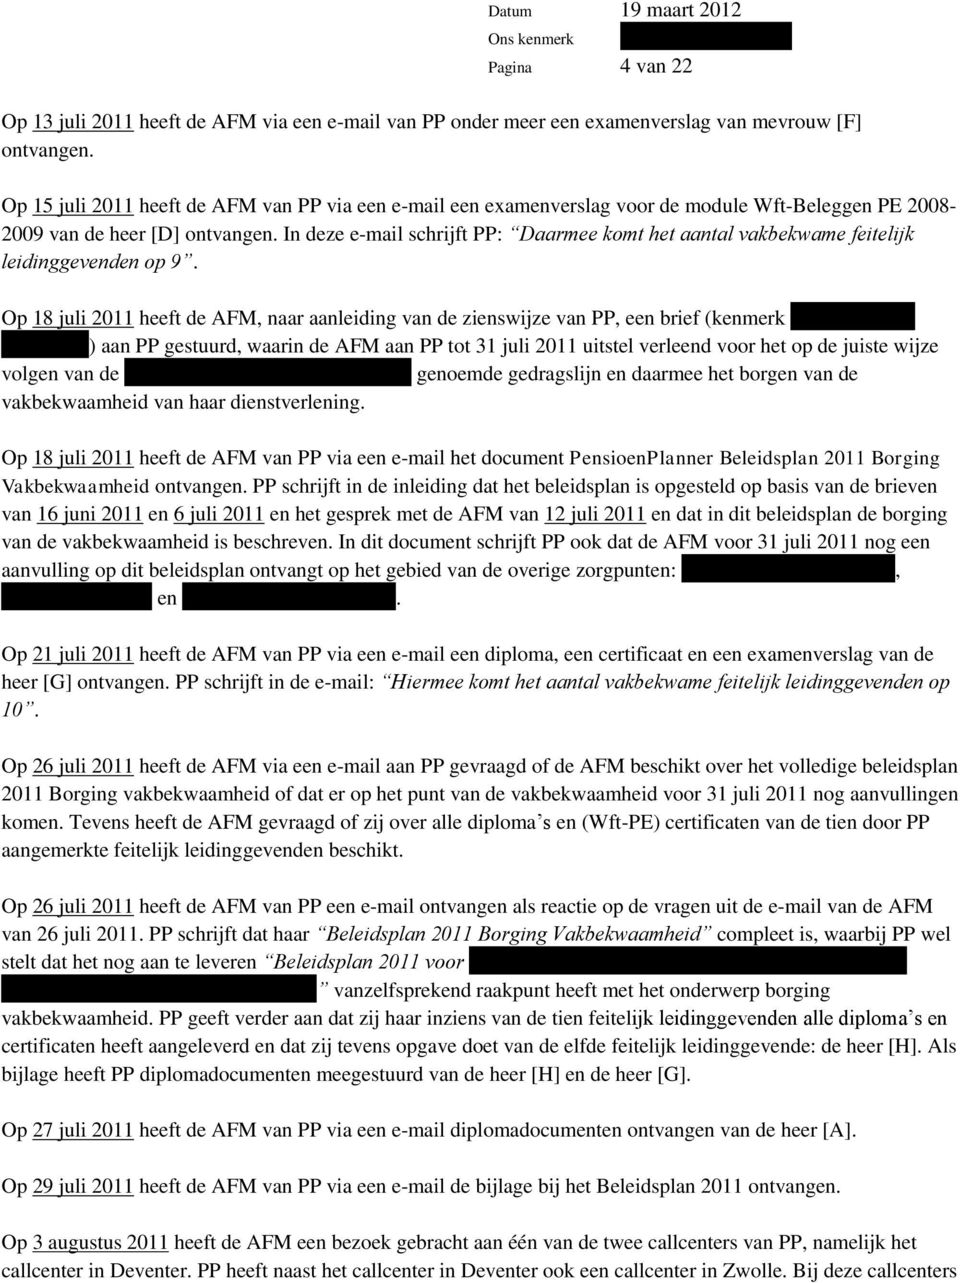 In deze e-mail schrijft PP: Daarmee komt het aantal vakbekwame feitelijk leidinggevenden op 9. Op 18 juli 2011 heeft de AFM, naar aanleiding van de zienswijze van PP, een brief (kenmerk [.] [.